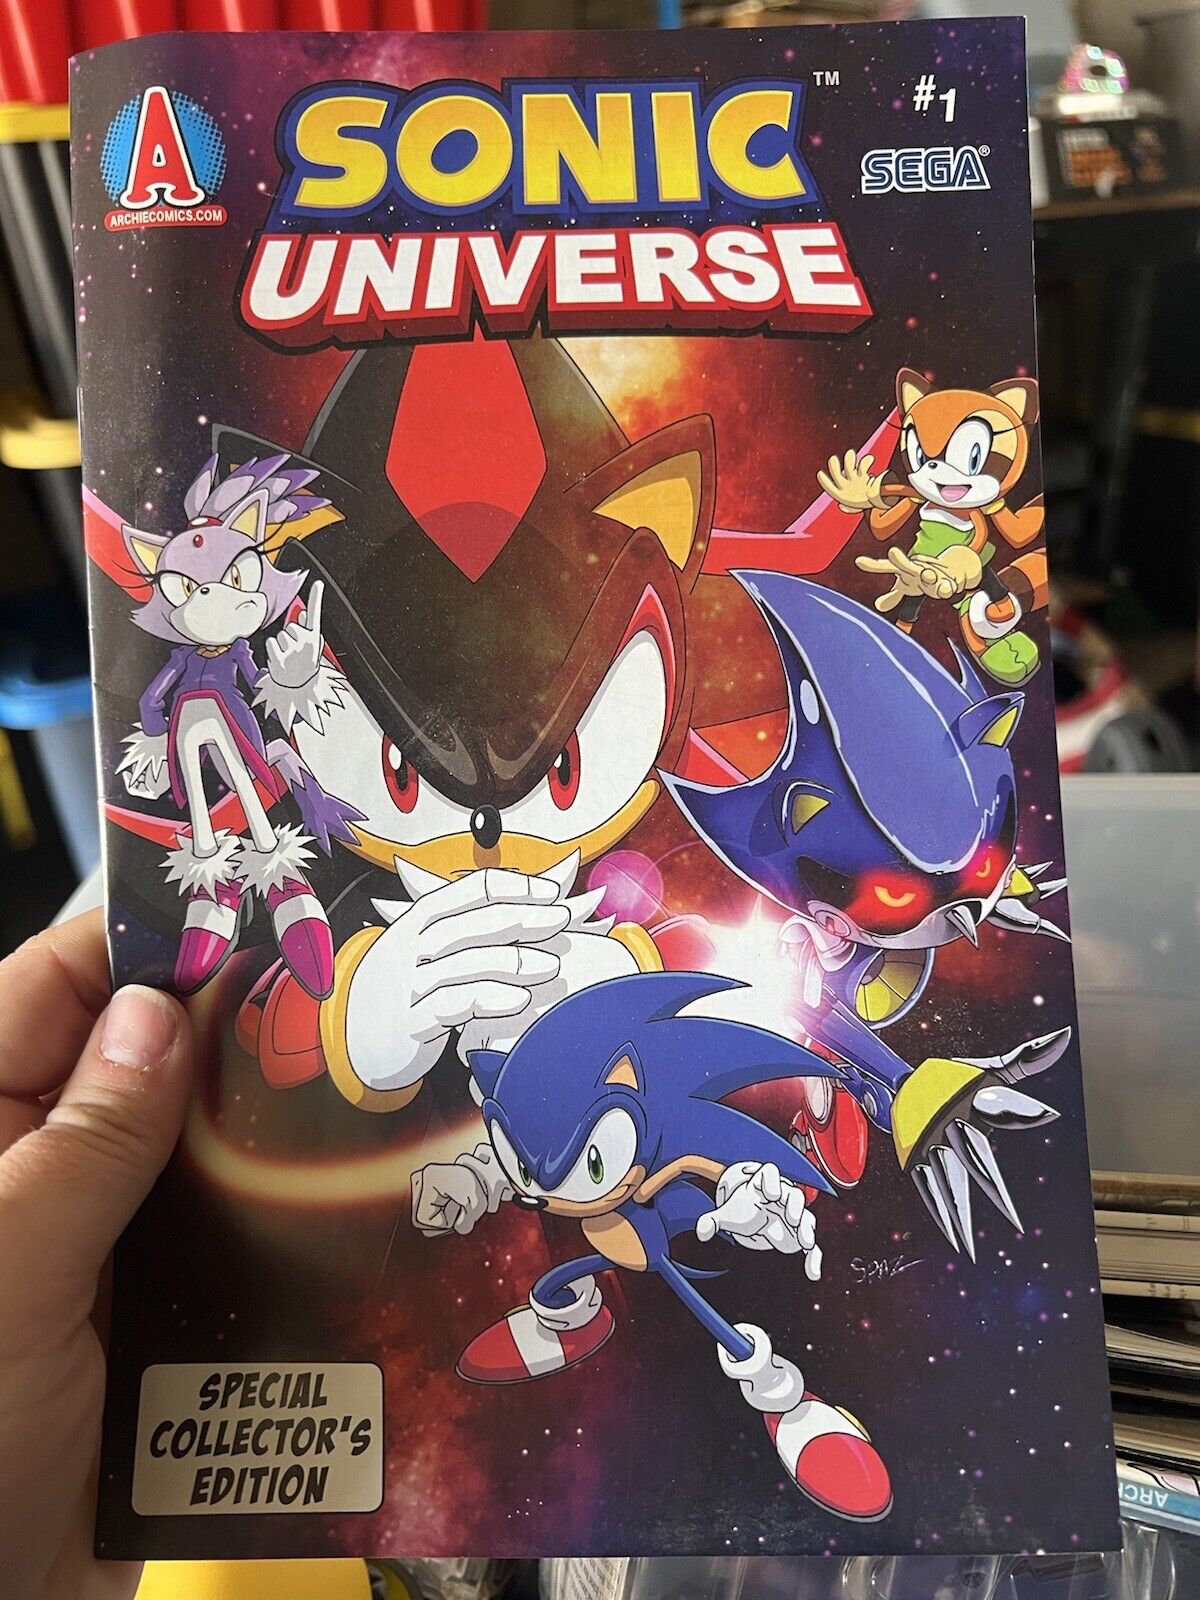 Sonic Universe #1 (ARCHIE COMICS Publications, Inc. September 2011)